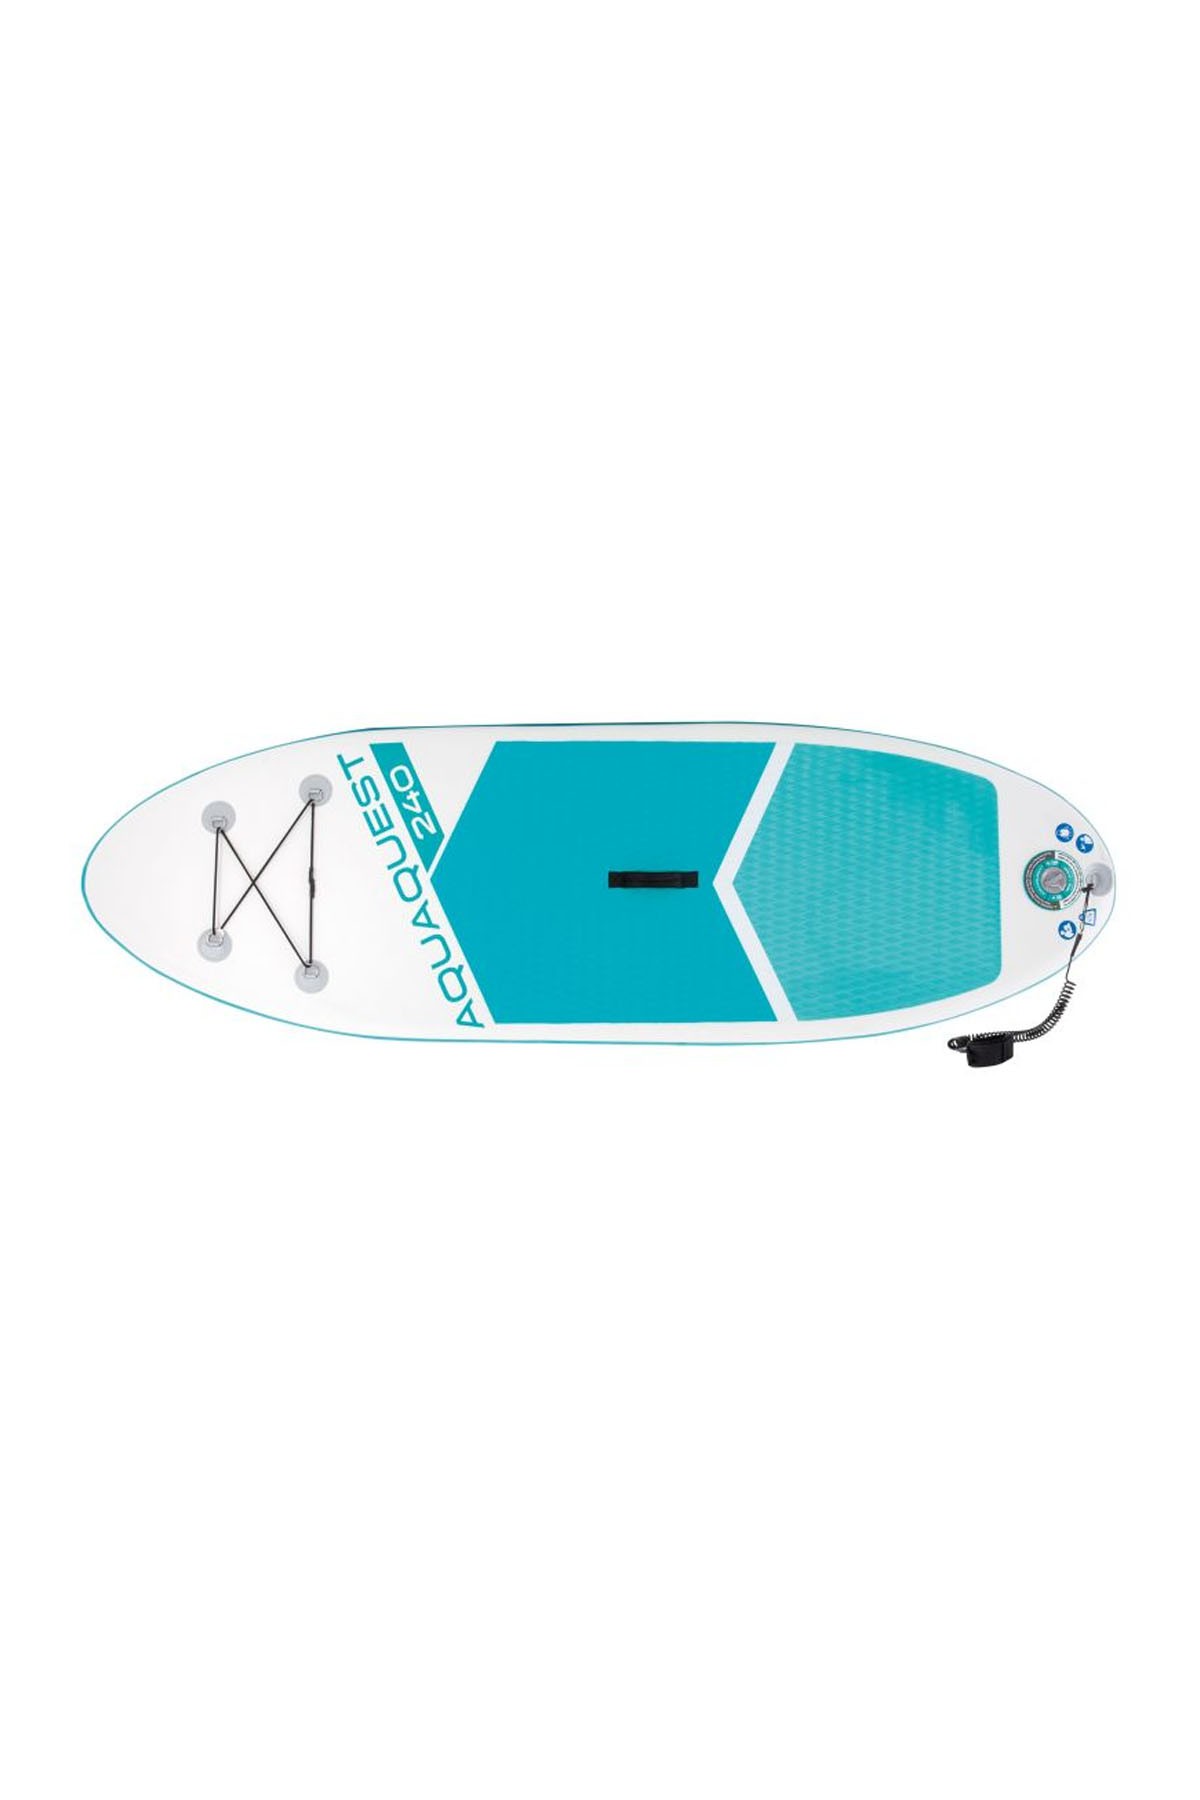 Intex Aqua Quest Şişme Ayakta Sörf Tahtası 244X76X13 Cm